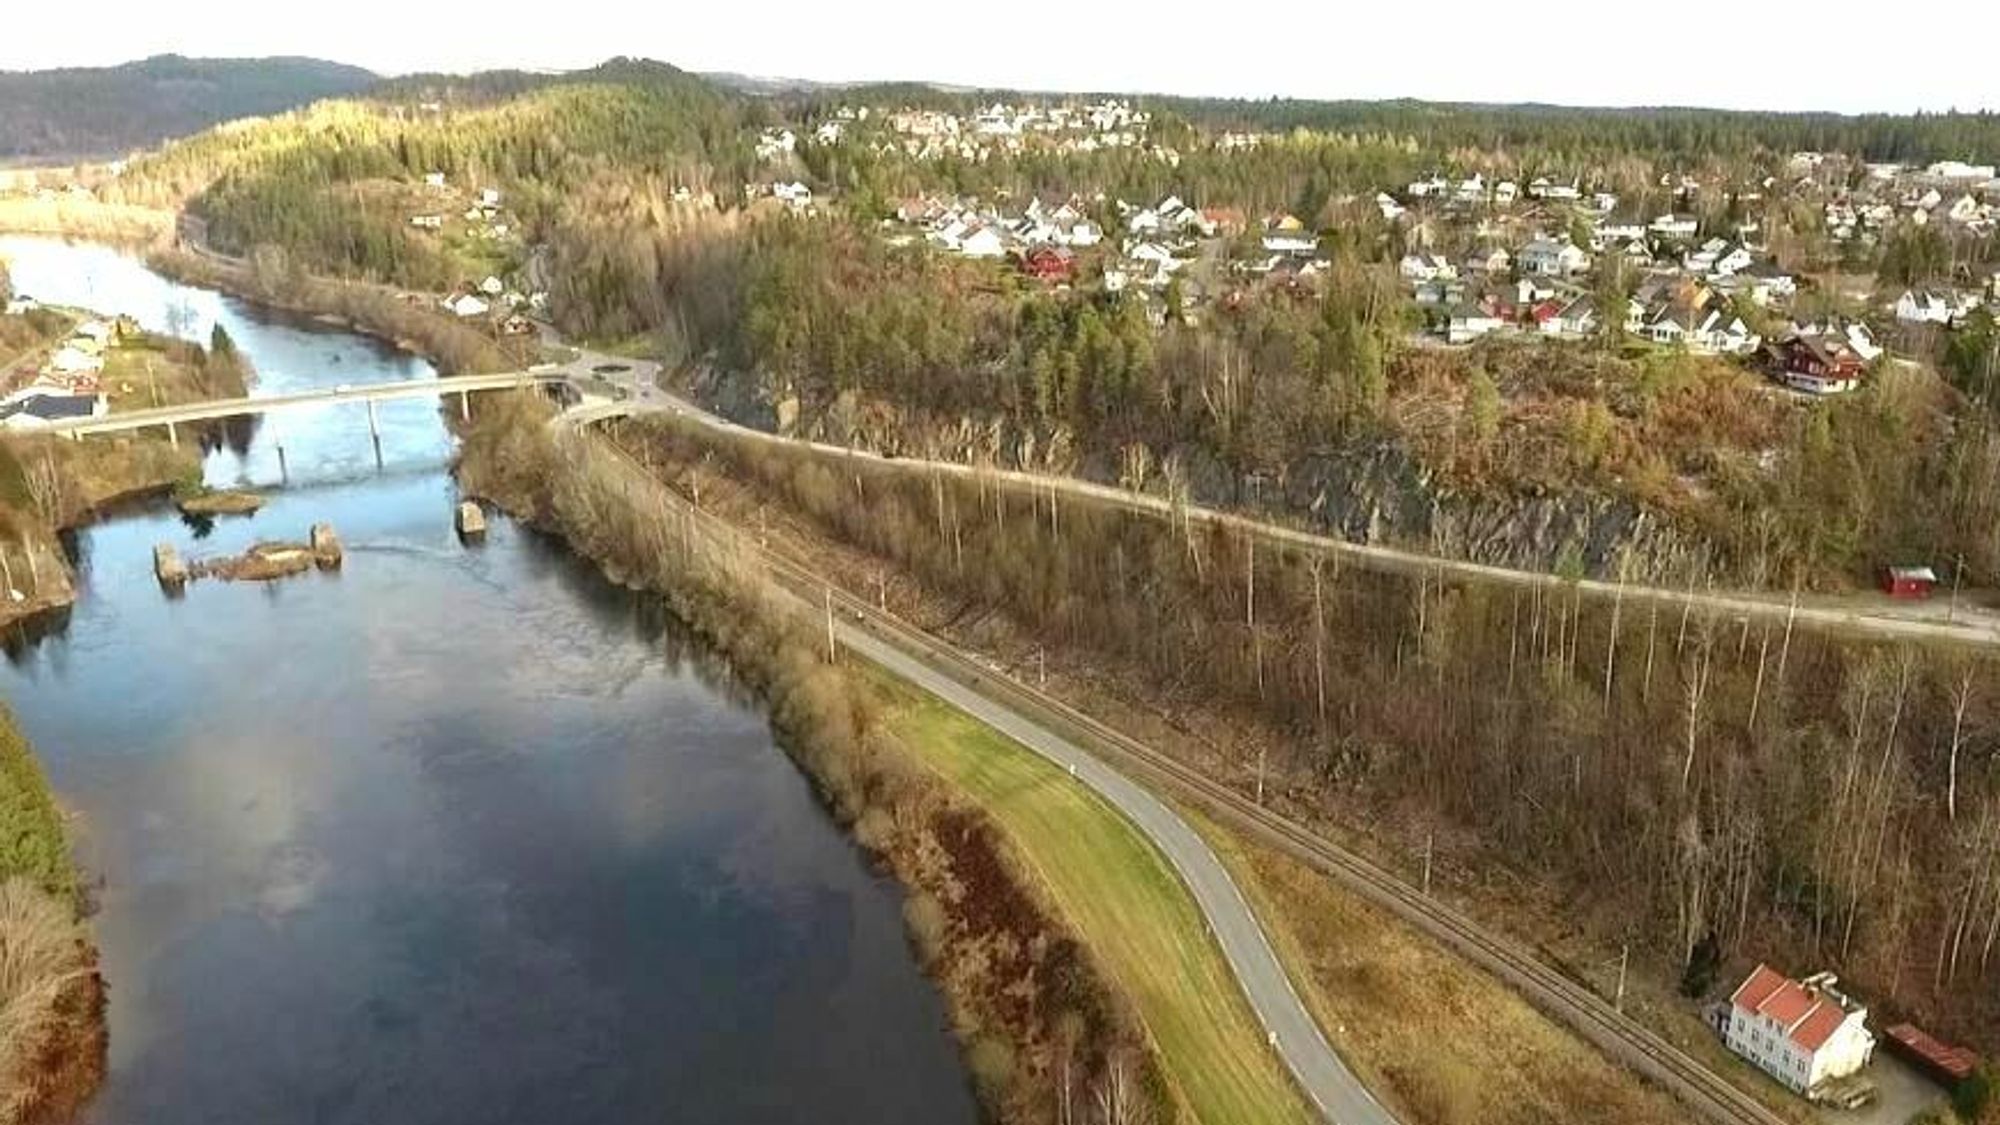 Det skal nå bygges gang- og sykkelvei på fylkesvei 42 Blakstadheia-Blakstad, slik at det blir et godt tilbud helt frem til kommunesenteret for myke trafikanter.